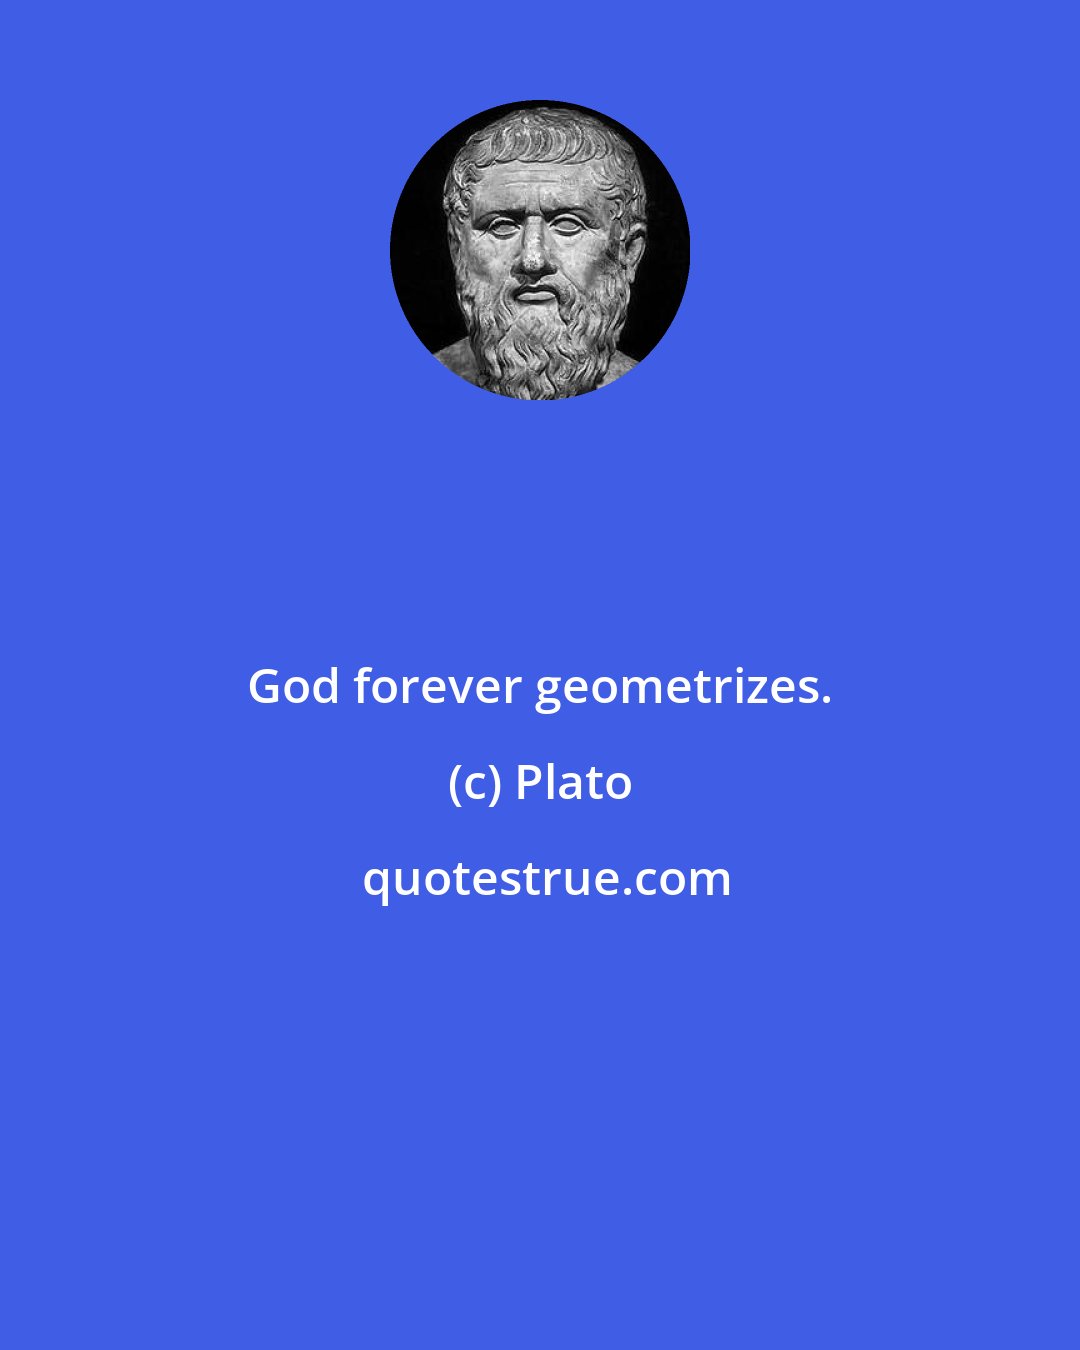 Plato: God forever geometrizes.